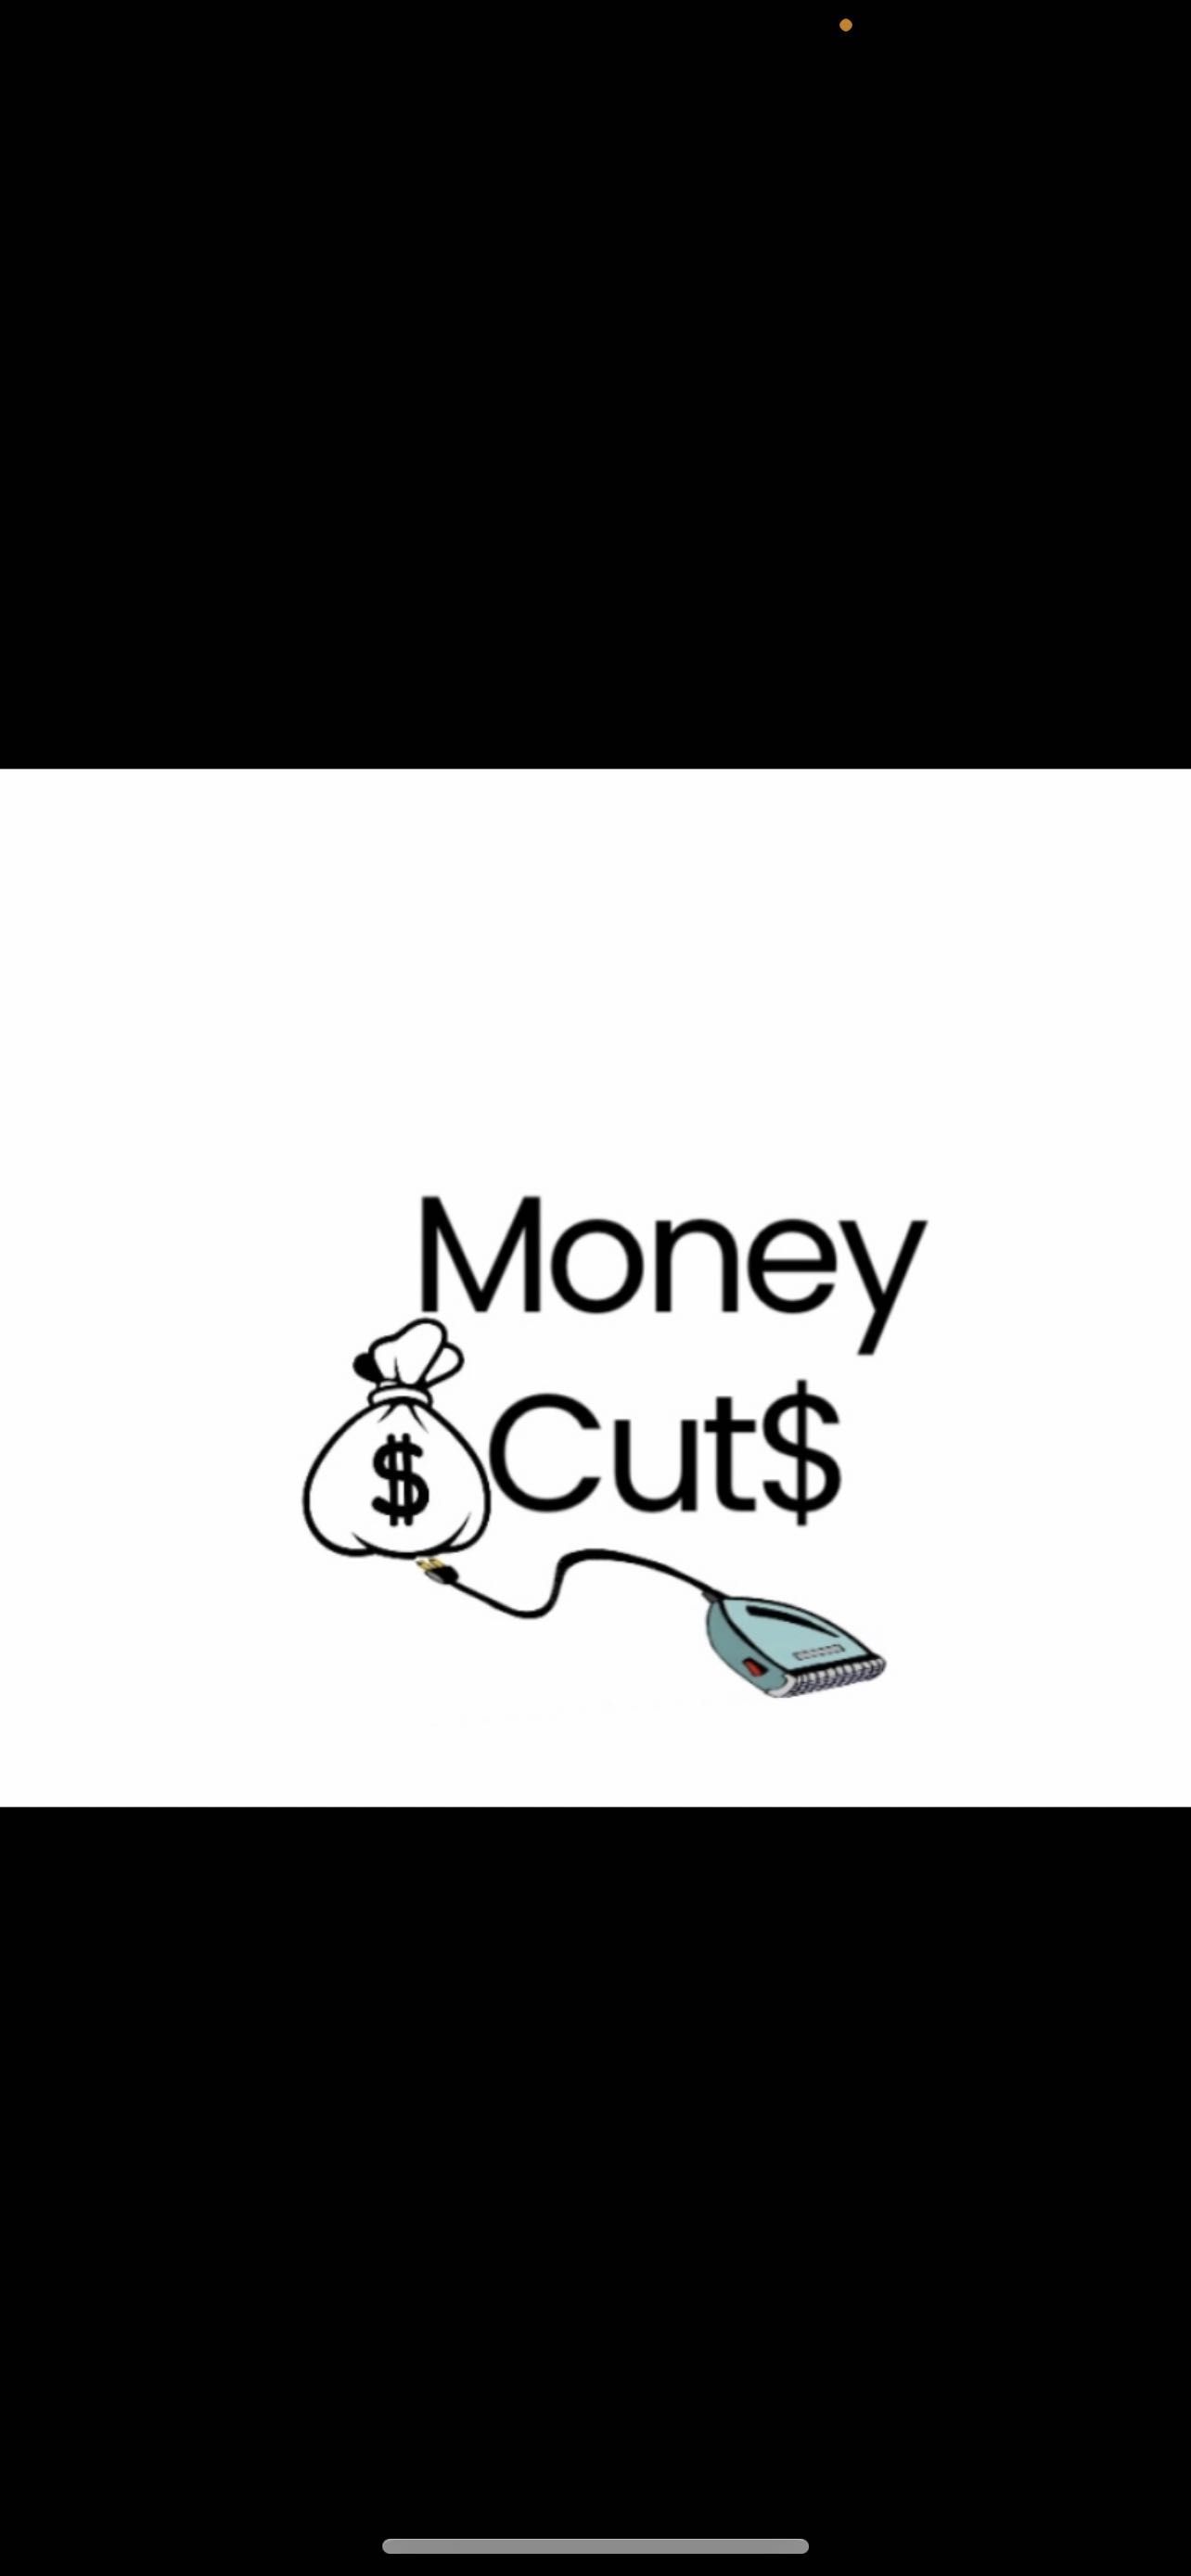 Money Cuts, 111, Dillwyn, 23936